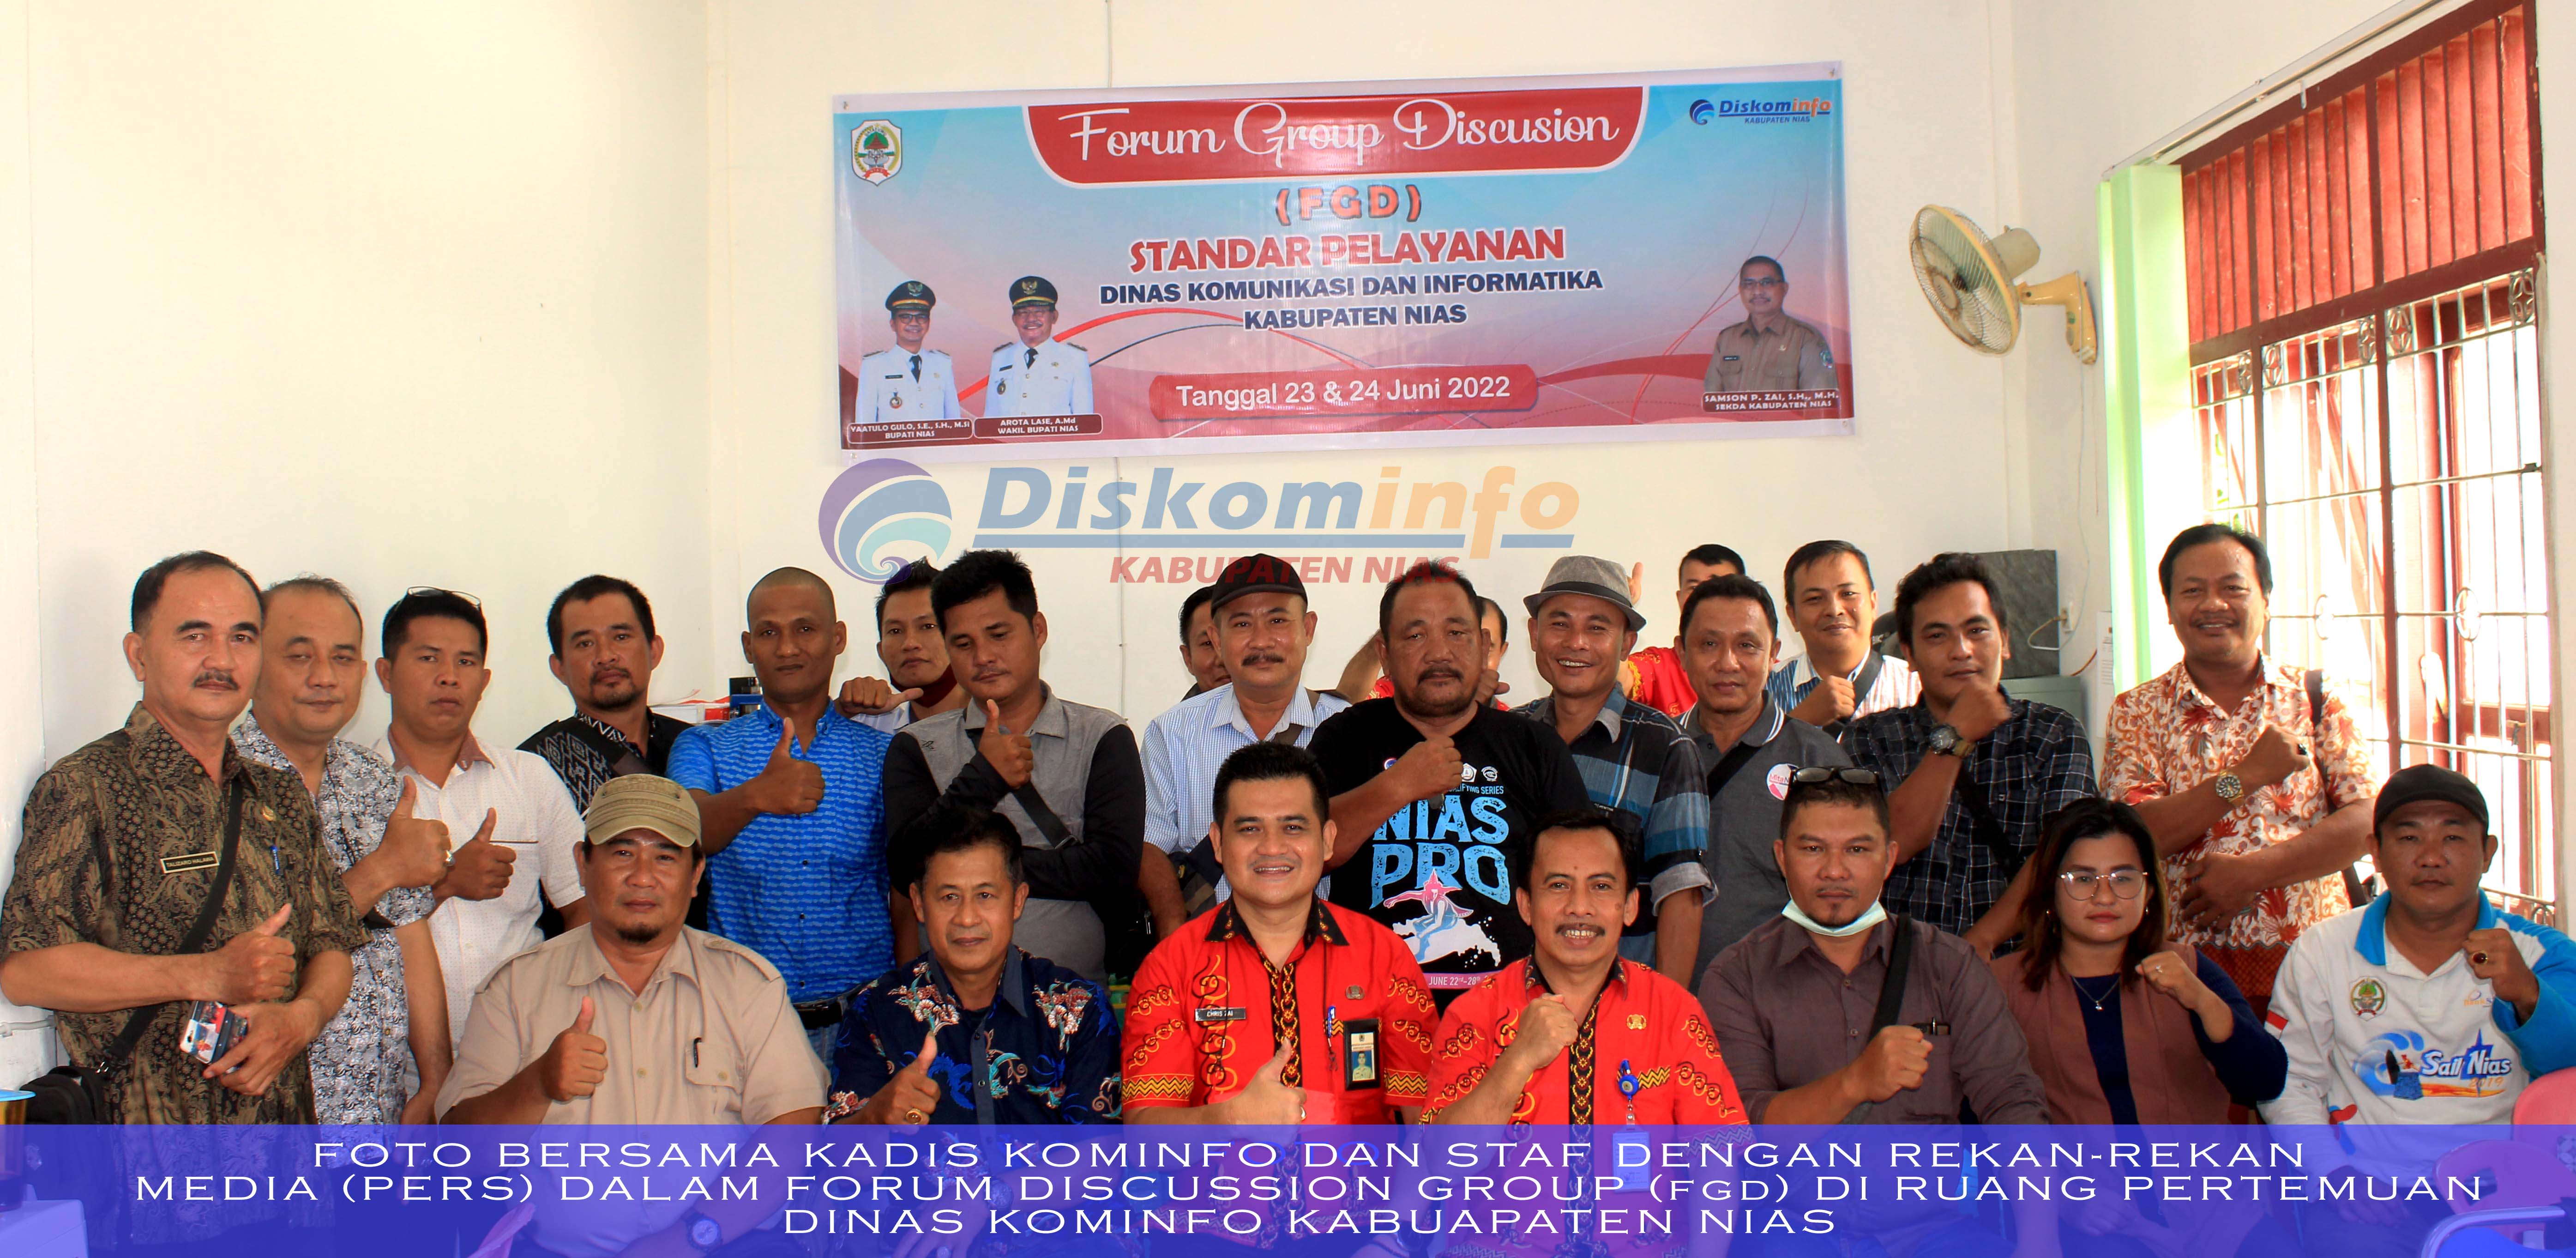 Kegiatan Forum Discussion Group Dinas Kominfo Kabupaten Nias dengan rekan-rekan media